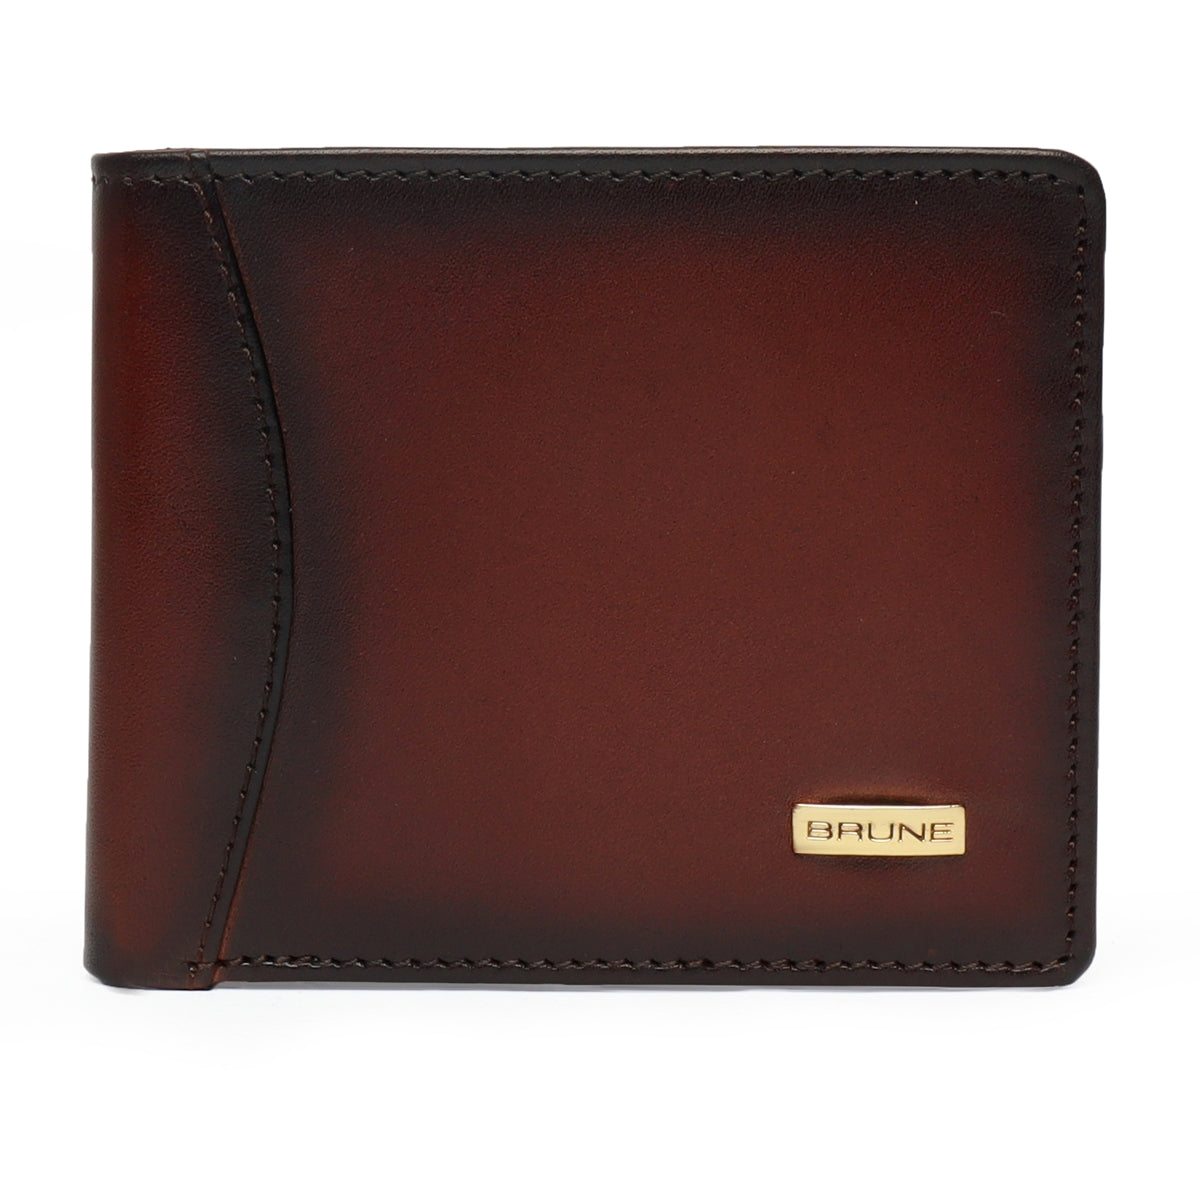 Brune & Bareskin Dark Brown Veg Tanned Hand Painted Leather Wallet For Men With Golden Nicklel Finished Logo